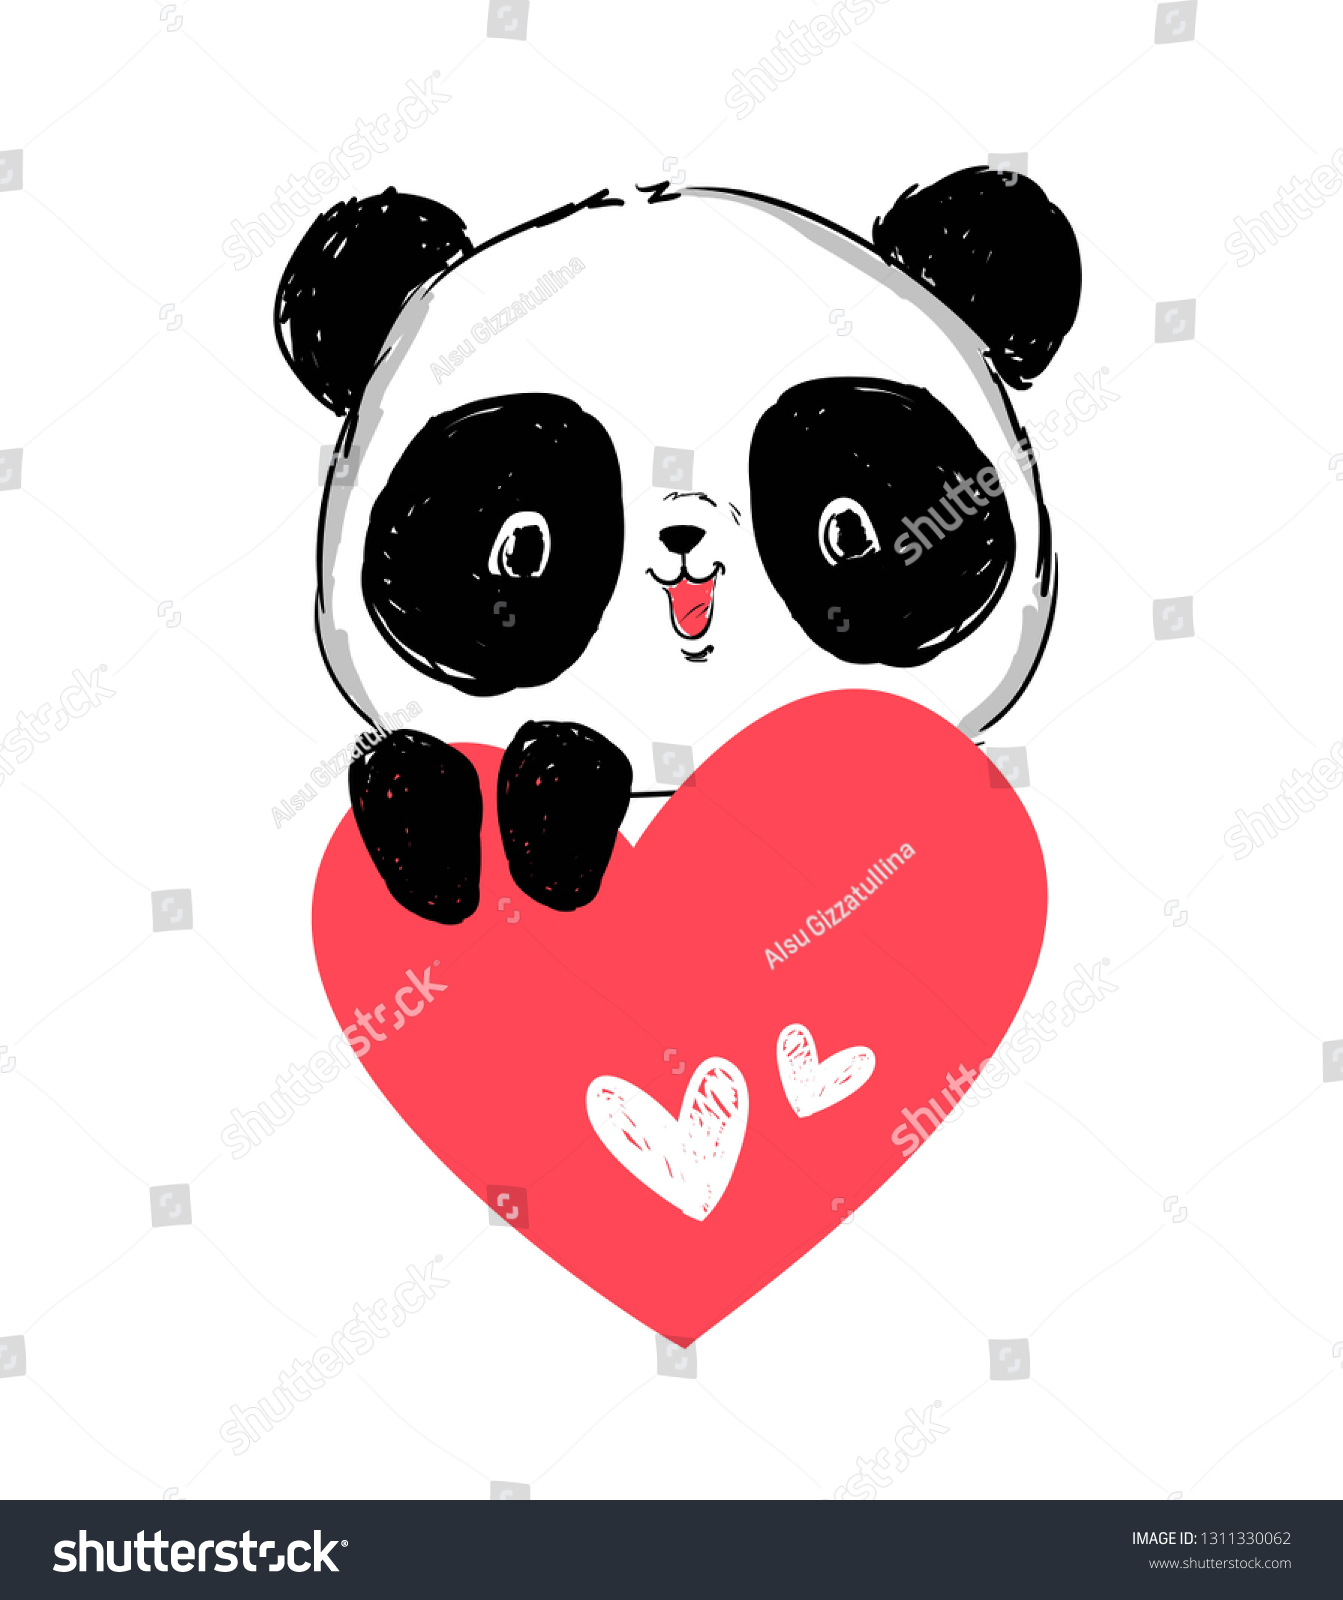 Панда с сердечком рисунок